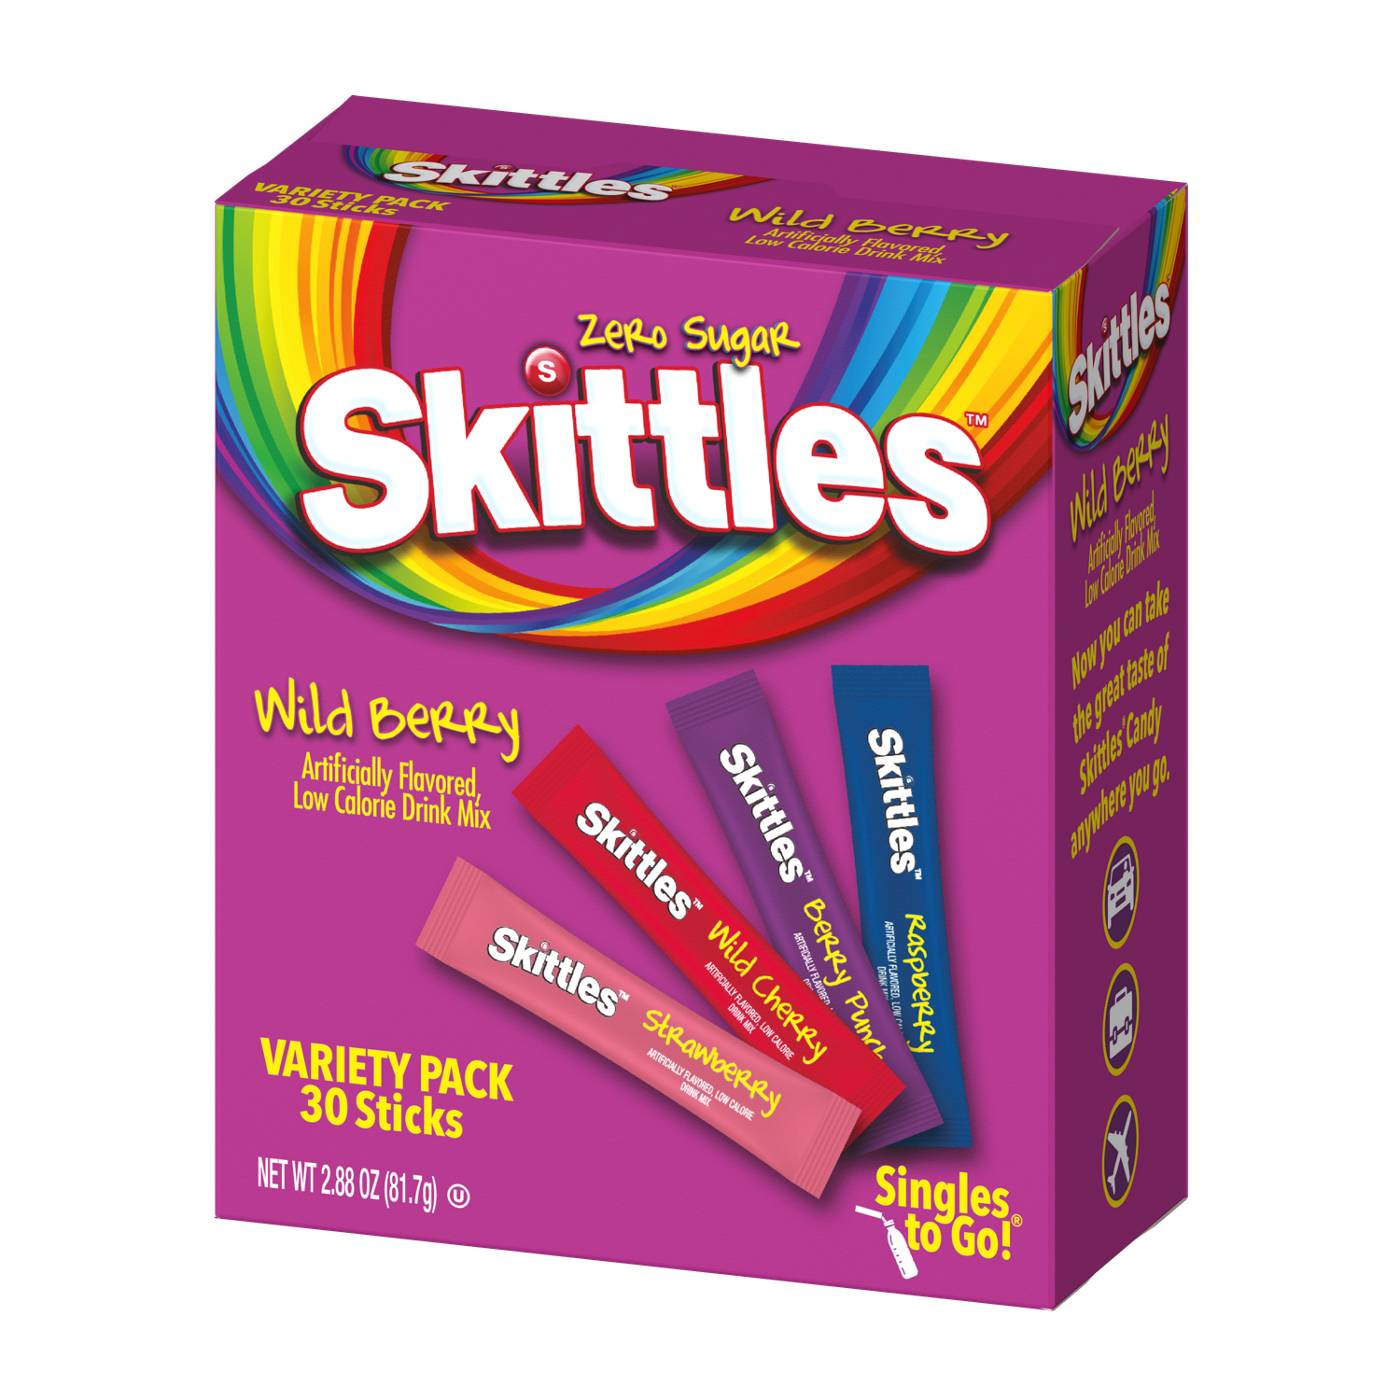 Skittles Zero Sugar Singles to Go Variety Pack - Wild Berry; image 1 of 2